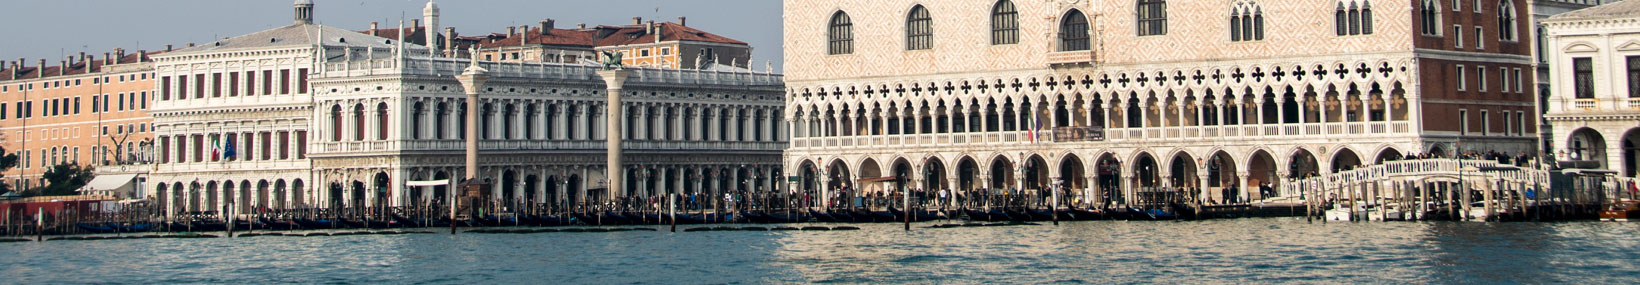 panoramica venezia